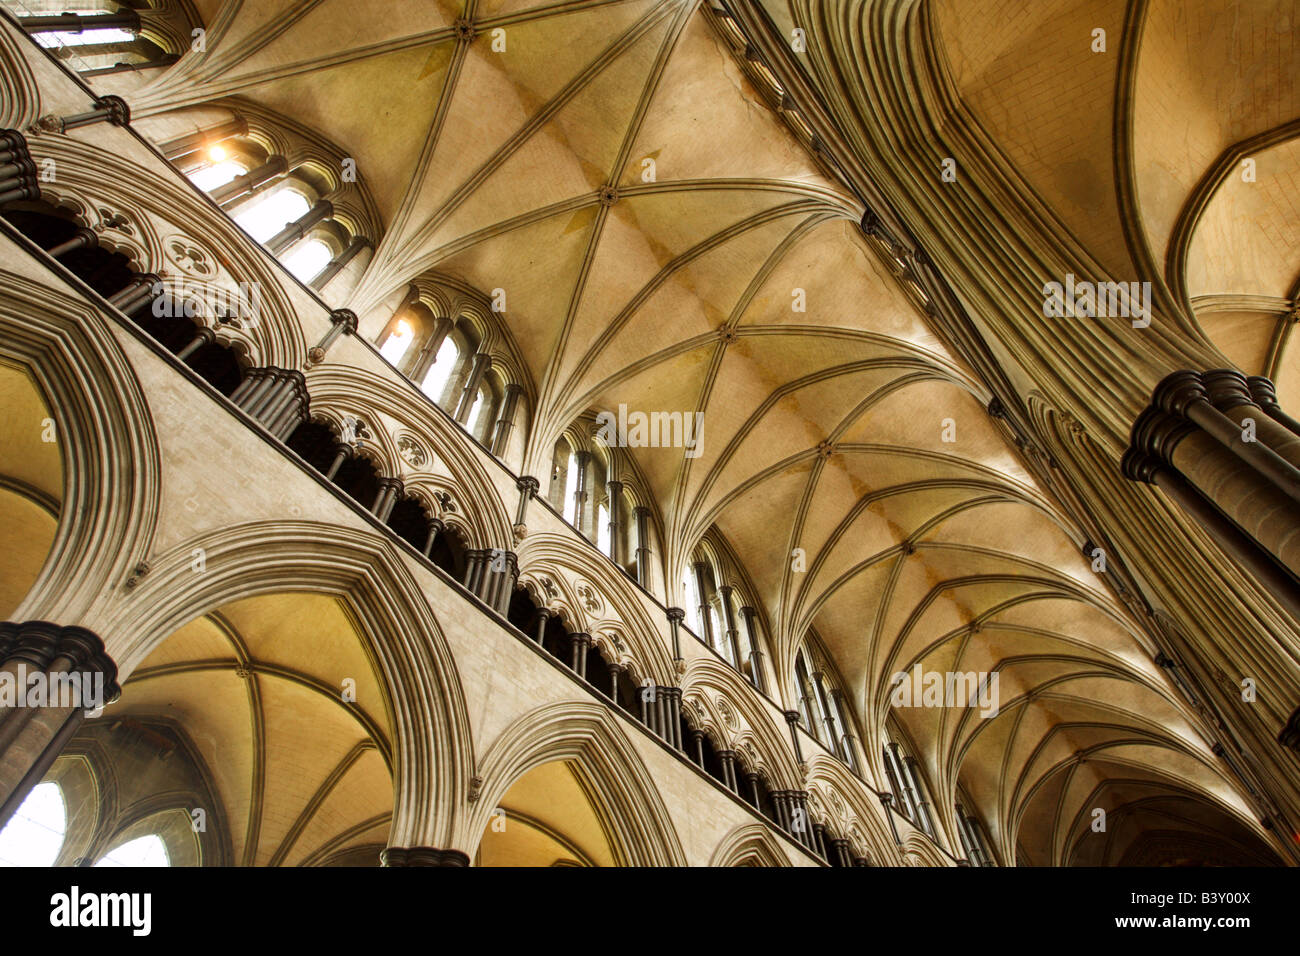 La cathédrale de Salisbury Wiltshire, Angleterre Banque D'Images